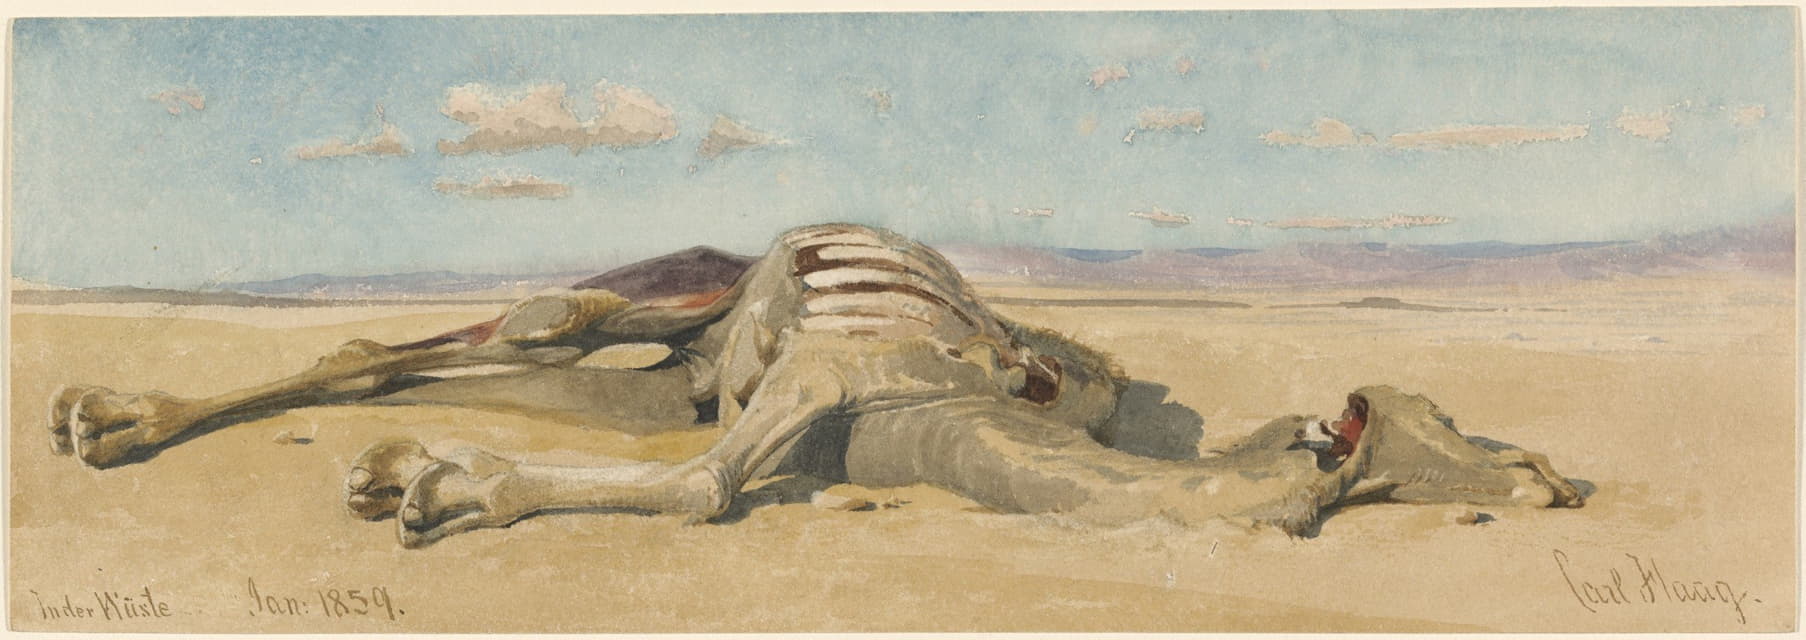 Carl Haag - In der Wüste (In the Desert)